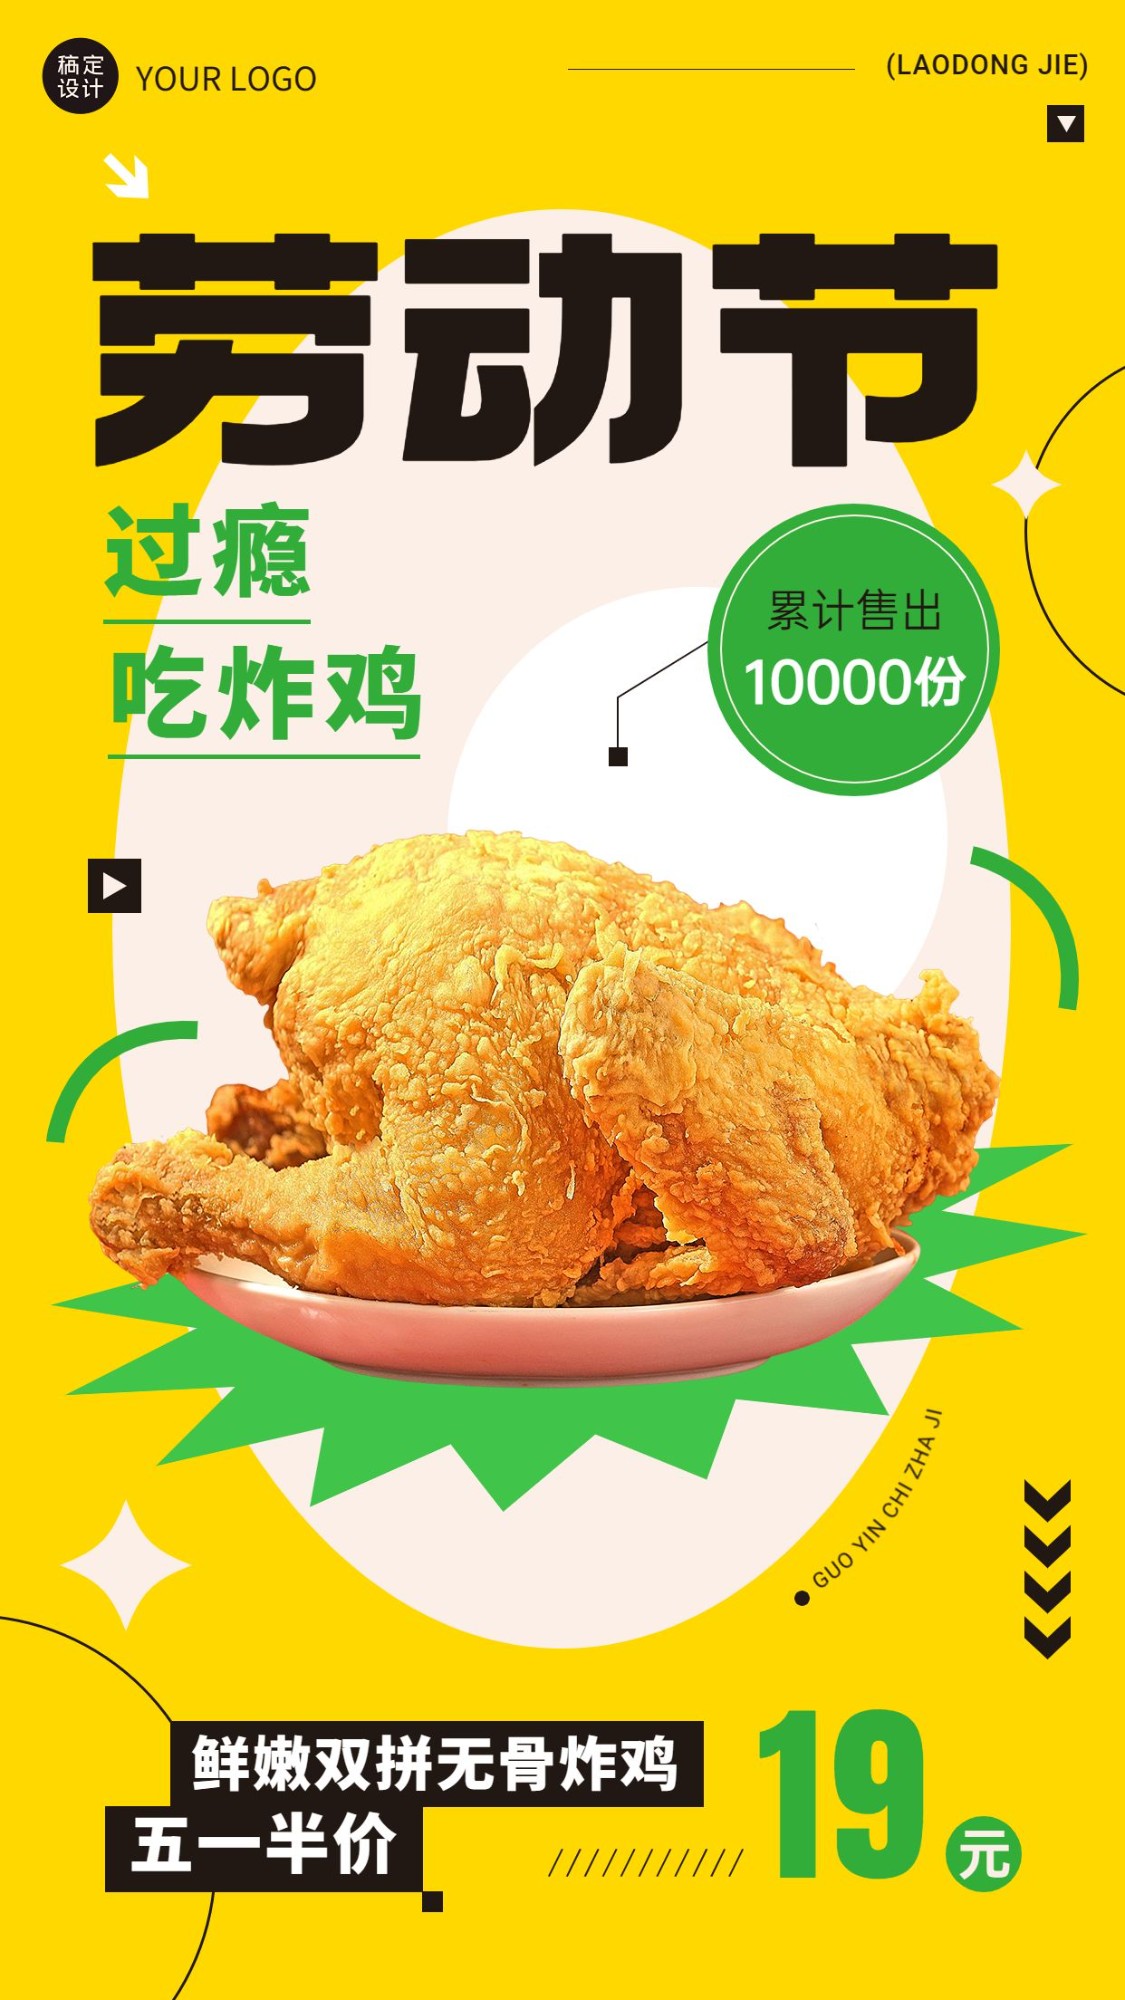 五一劳动节美食炸鸡产品营销手机海报预览效果